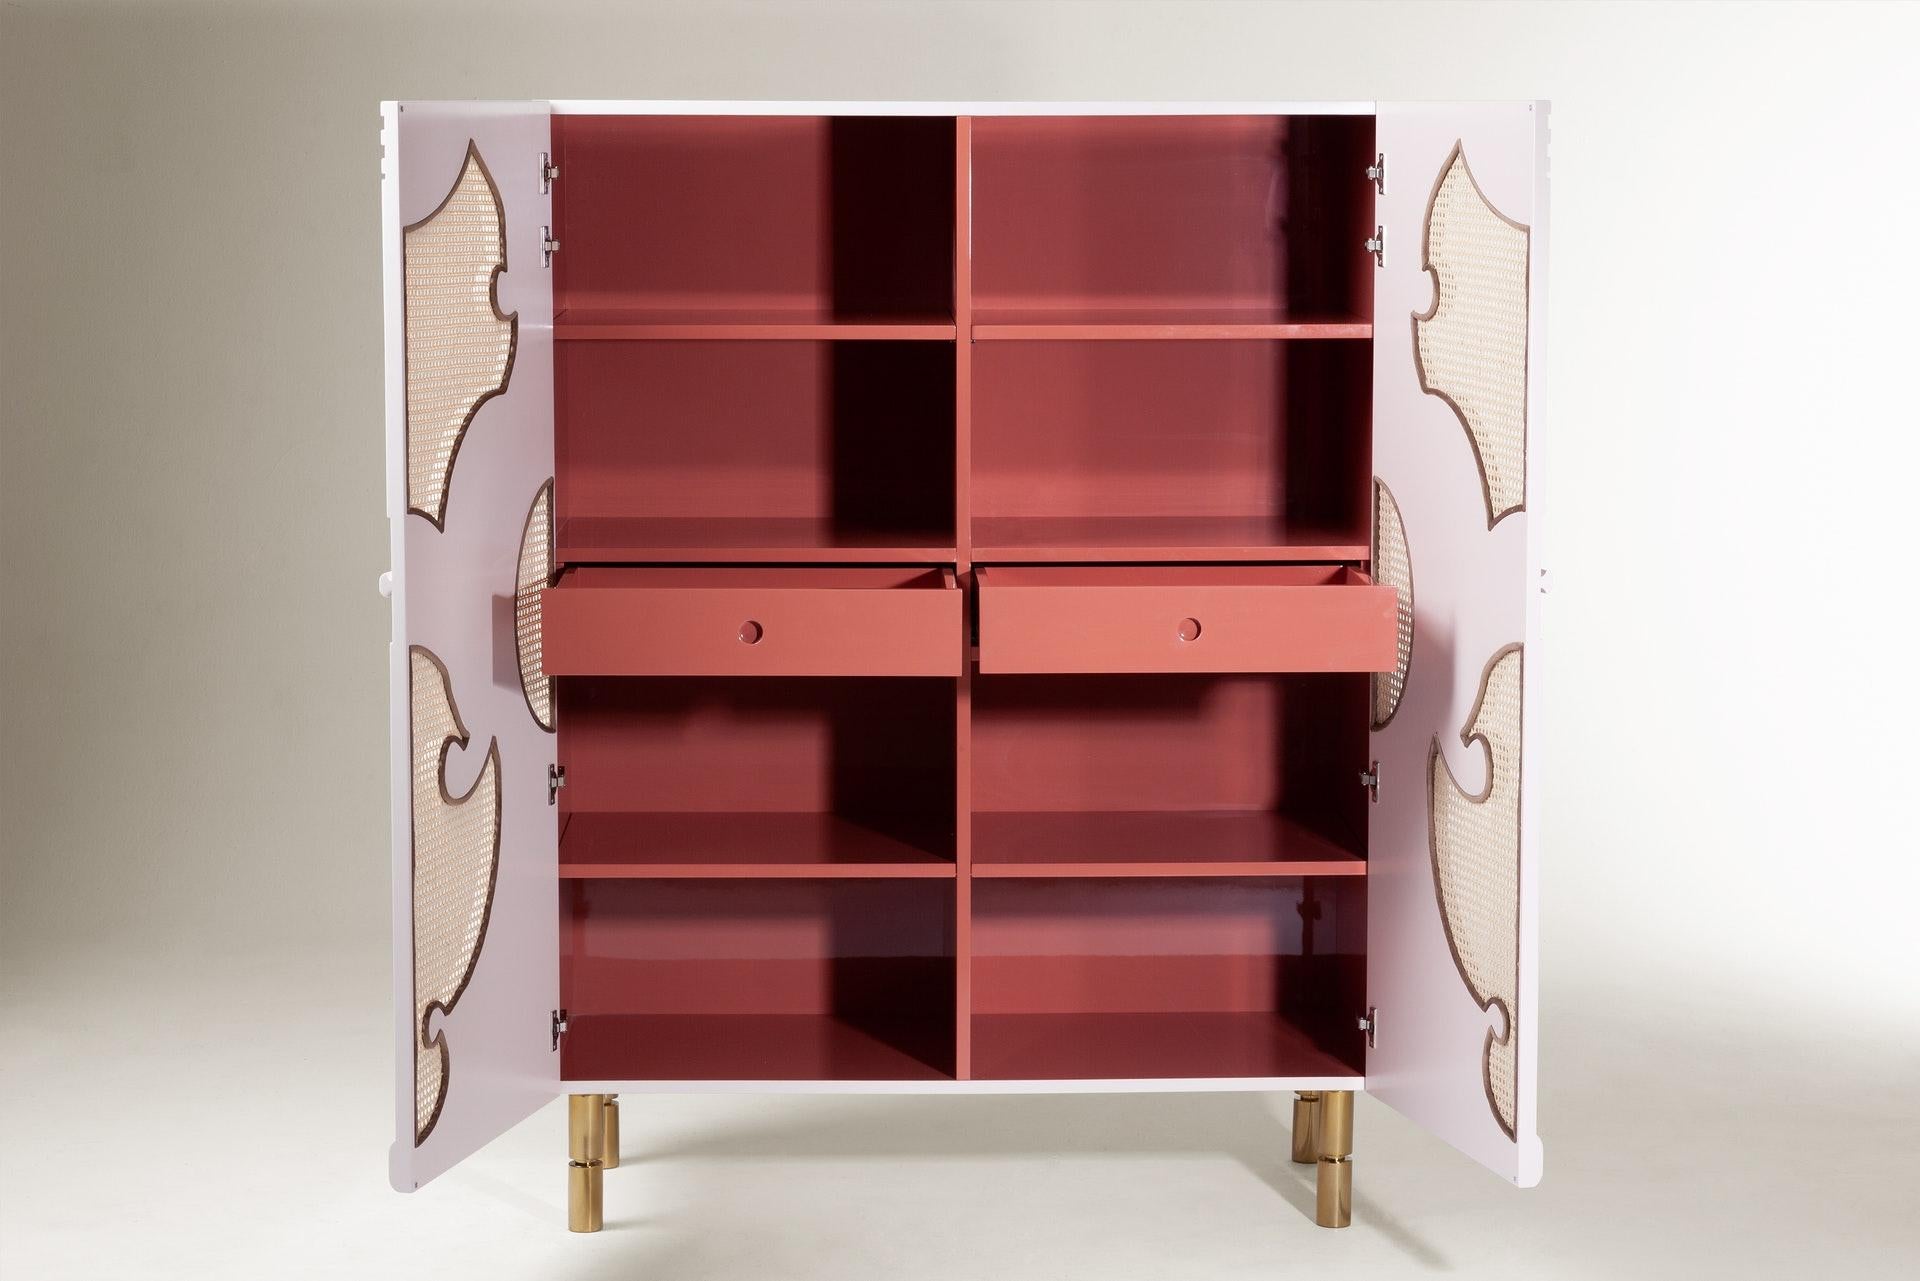 Traje de Luces Bar Cabinet ist eine Erkundung delikater Formen und eines Reichtums an Details, die auf einer Reise durch den Süden Spaniens gefunden wurden. Eleganz, Tradition und hervorragende Handwerkskunst vereinen sich zu einer perfekten